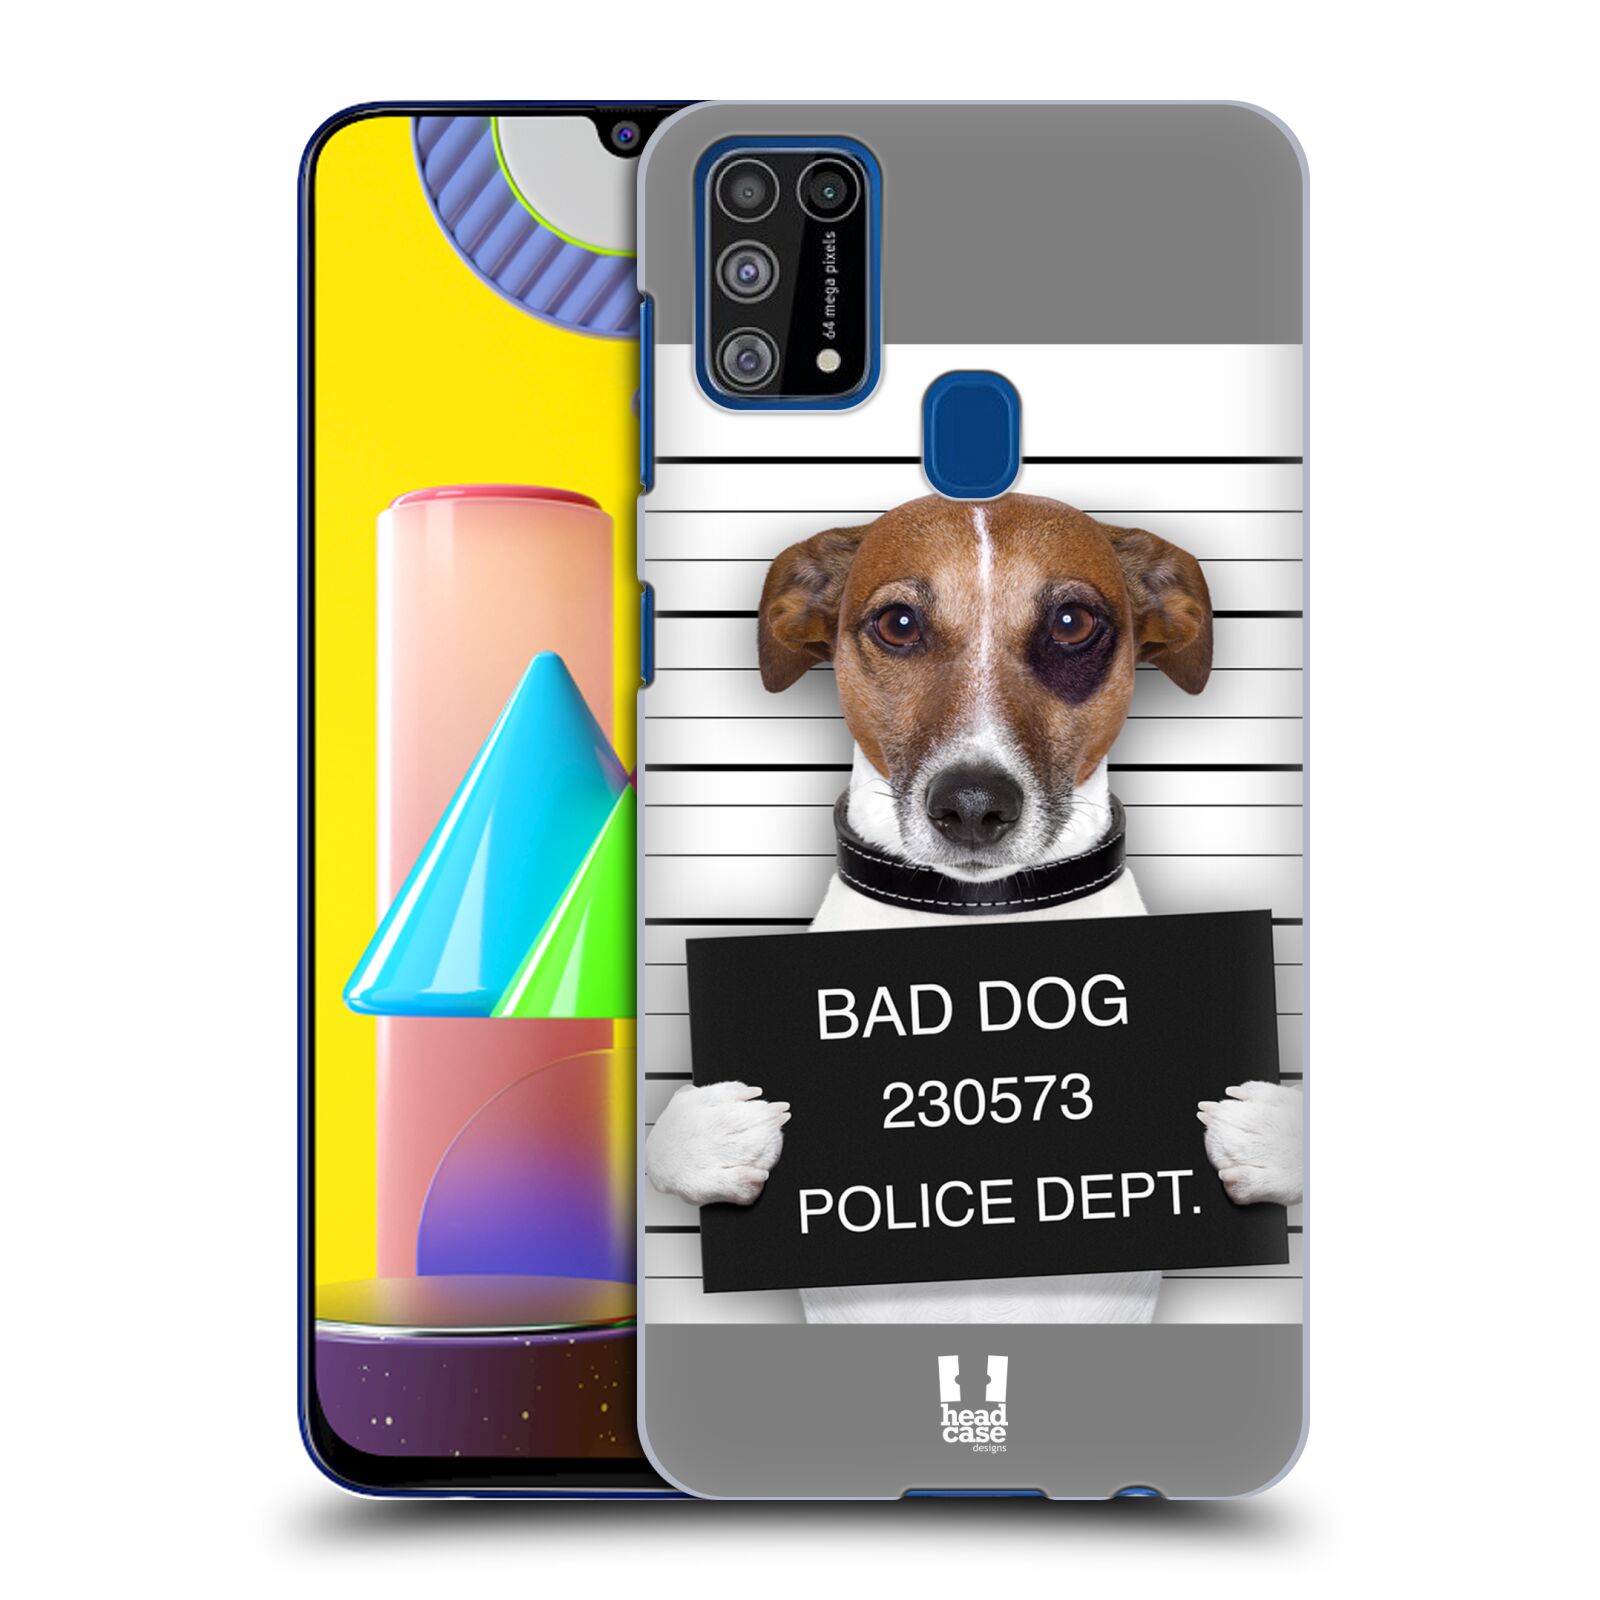 Plastový obal HEAD CASE na mobil Samsung Galaxy M31 vzor Legrační zvířátka pejsek na policii